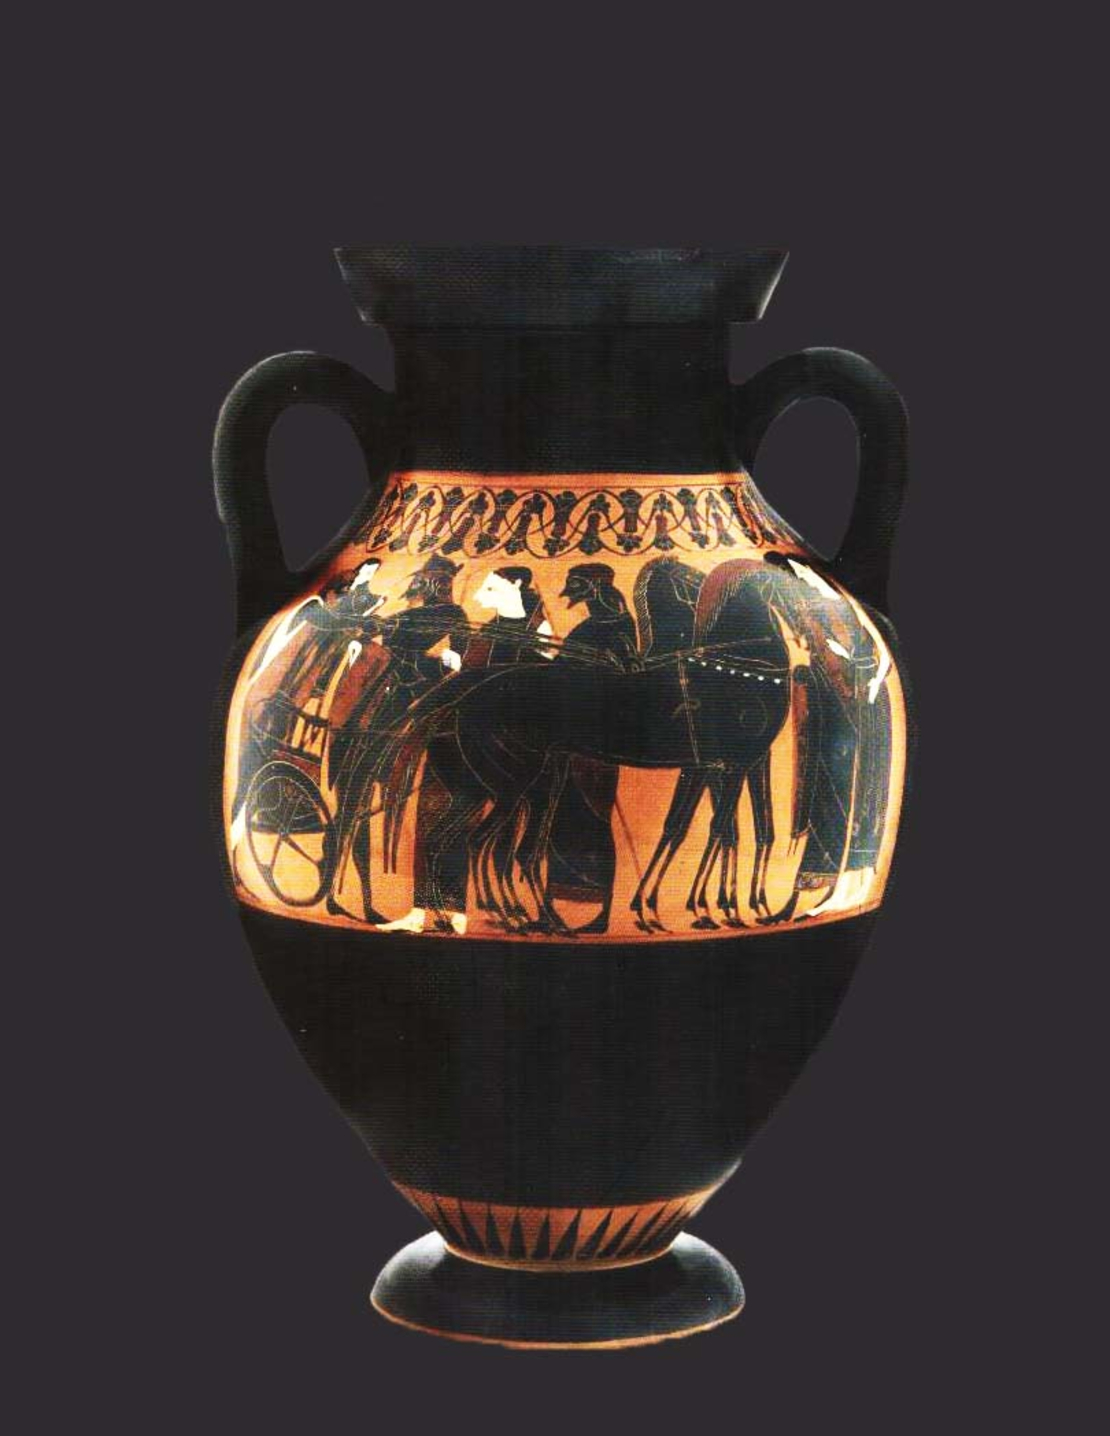 אלים, גיבורים ובני תמותה ביוון העתיקה